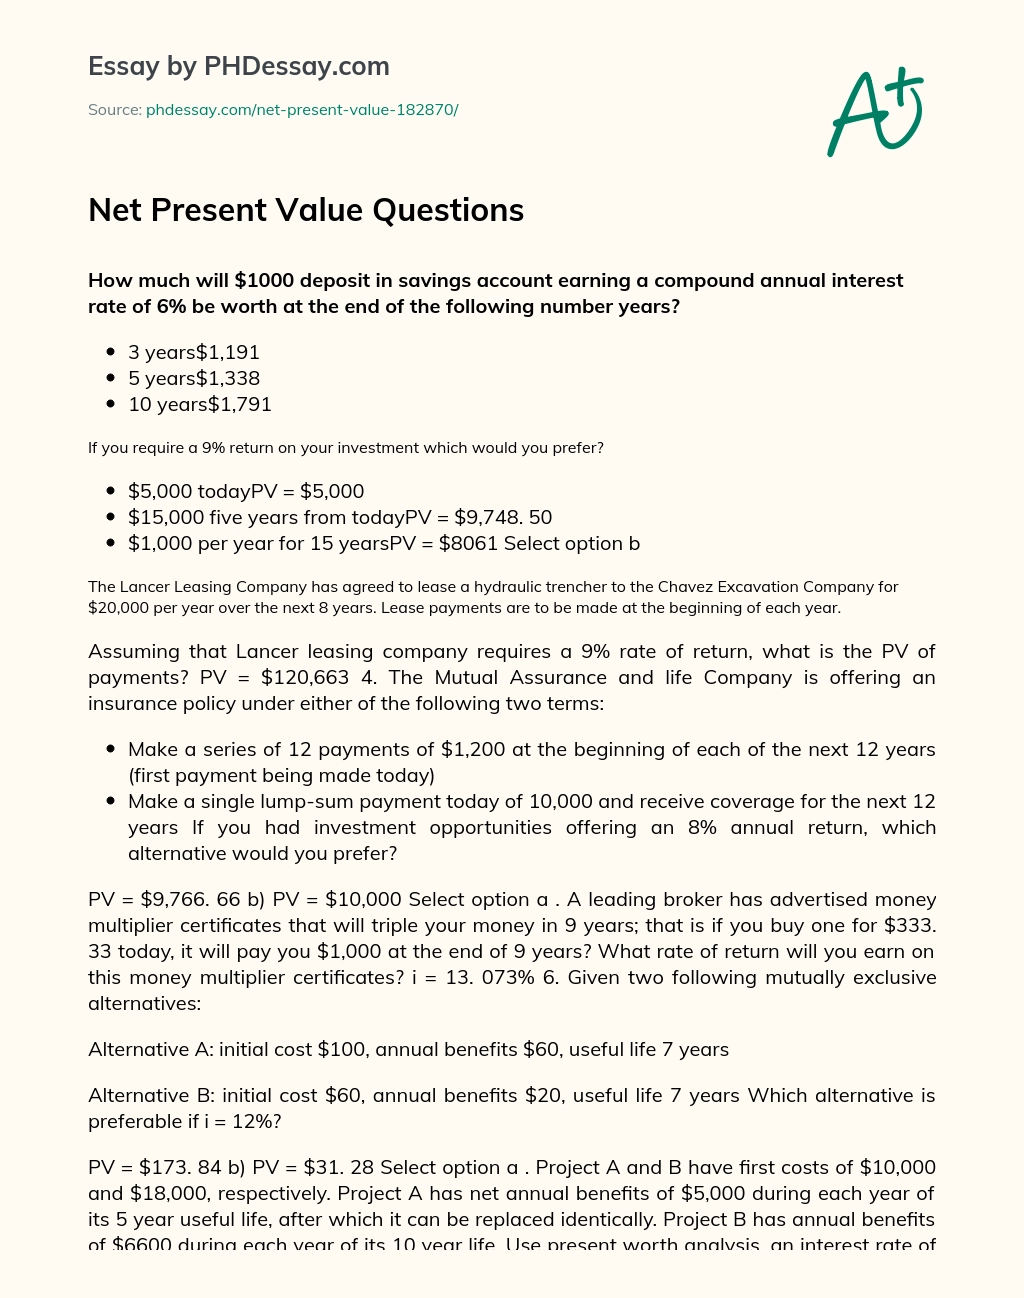 Net Present Value Questions essay